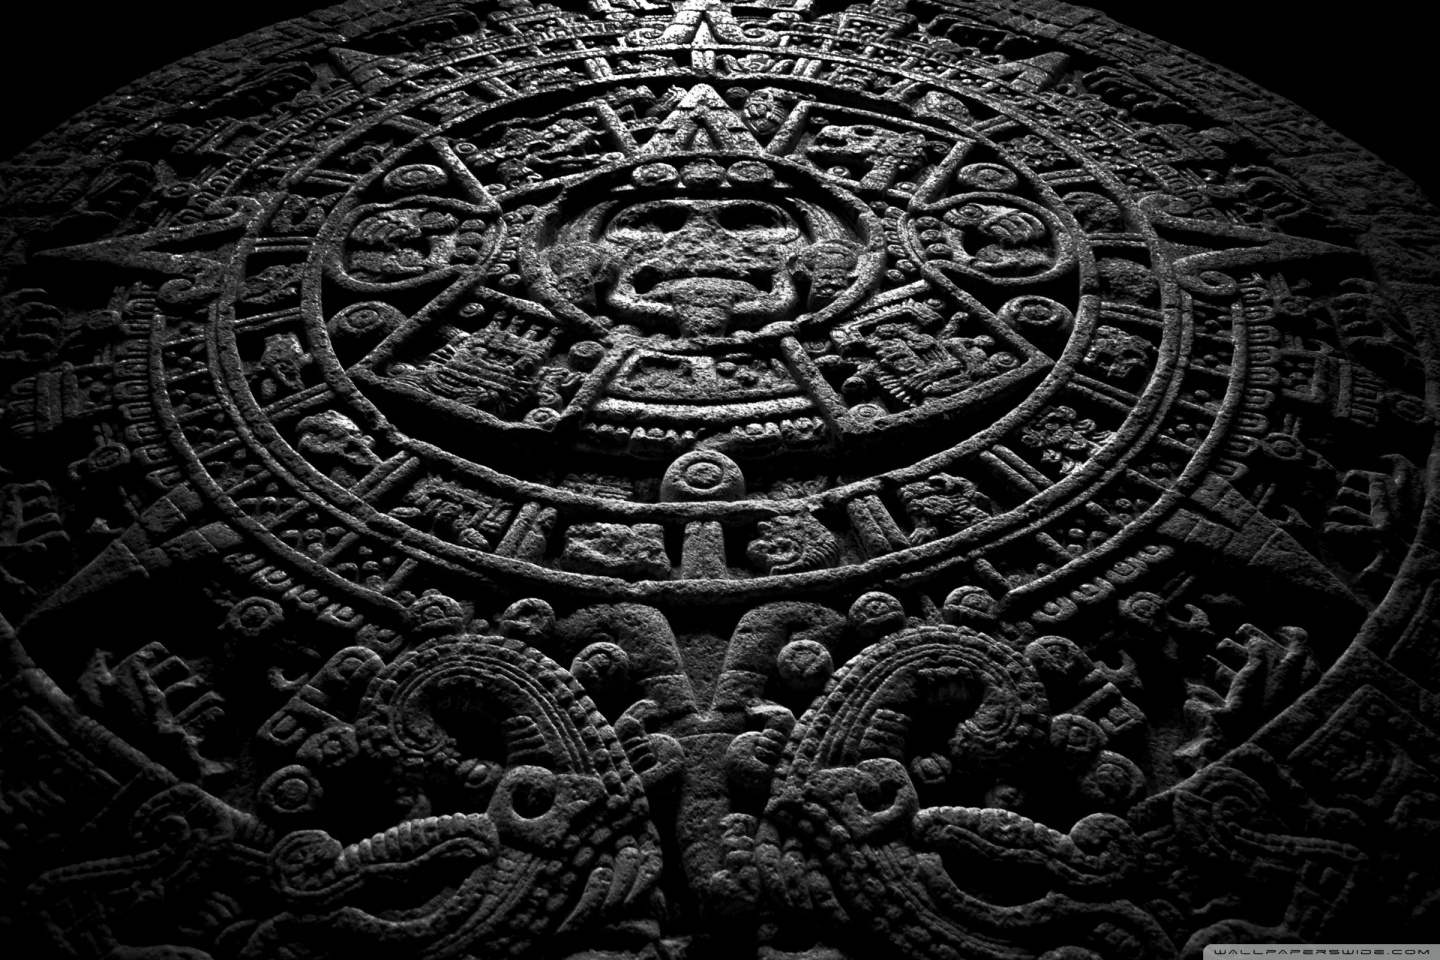 Mayan Calendar 2012 HD desktop wallpaper : High Definition